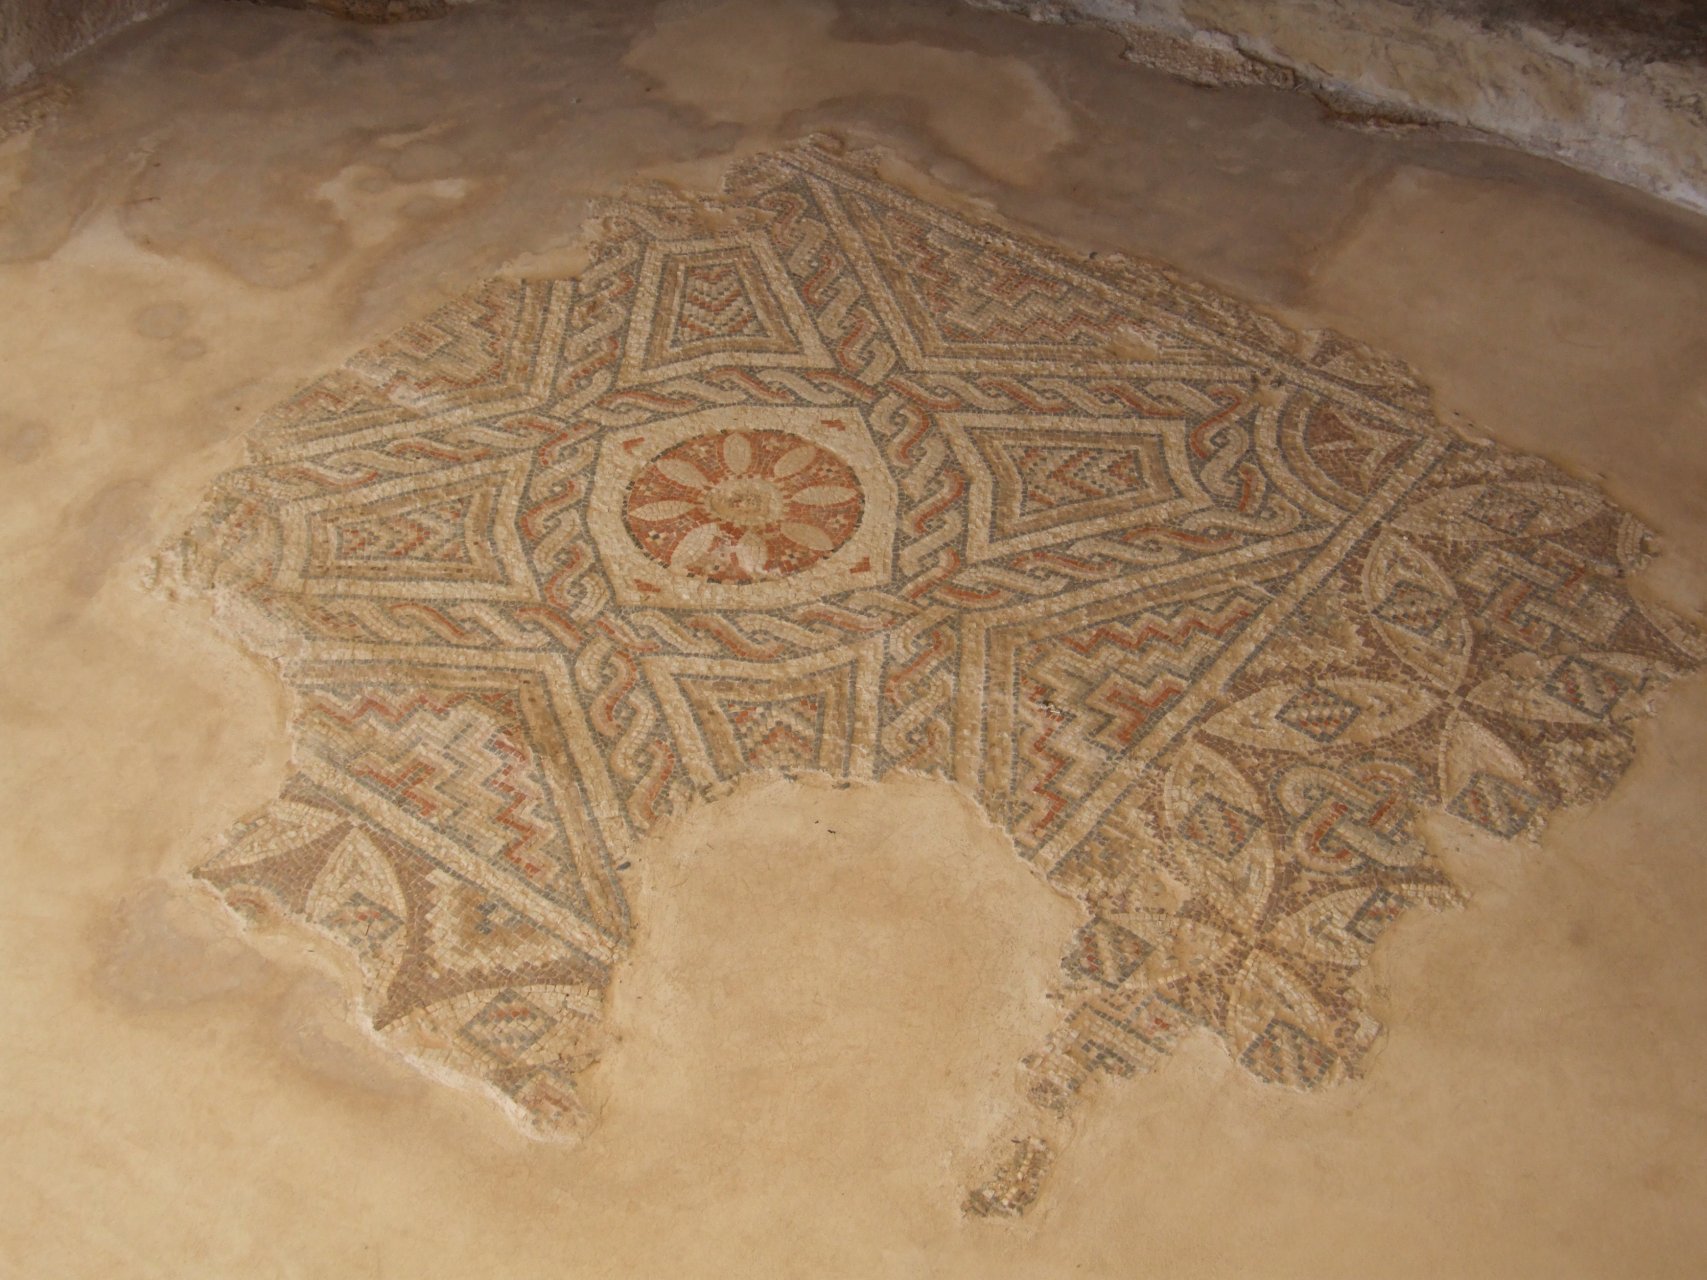 Mozaika podłogowa w willi Eustoliosa